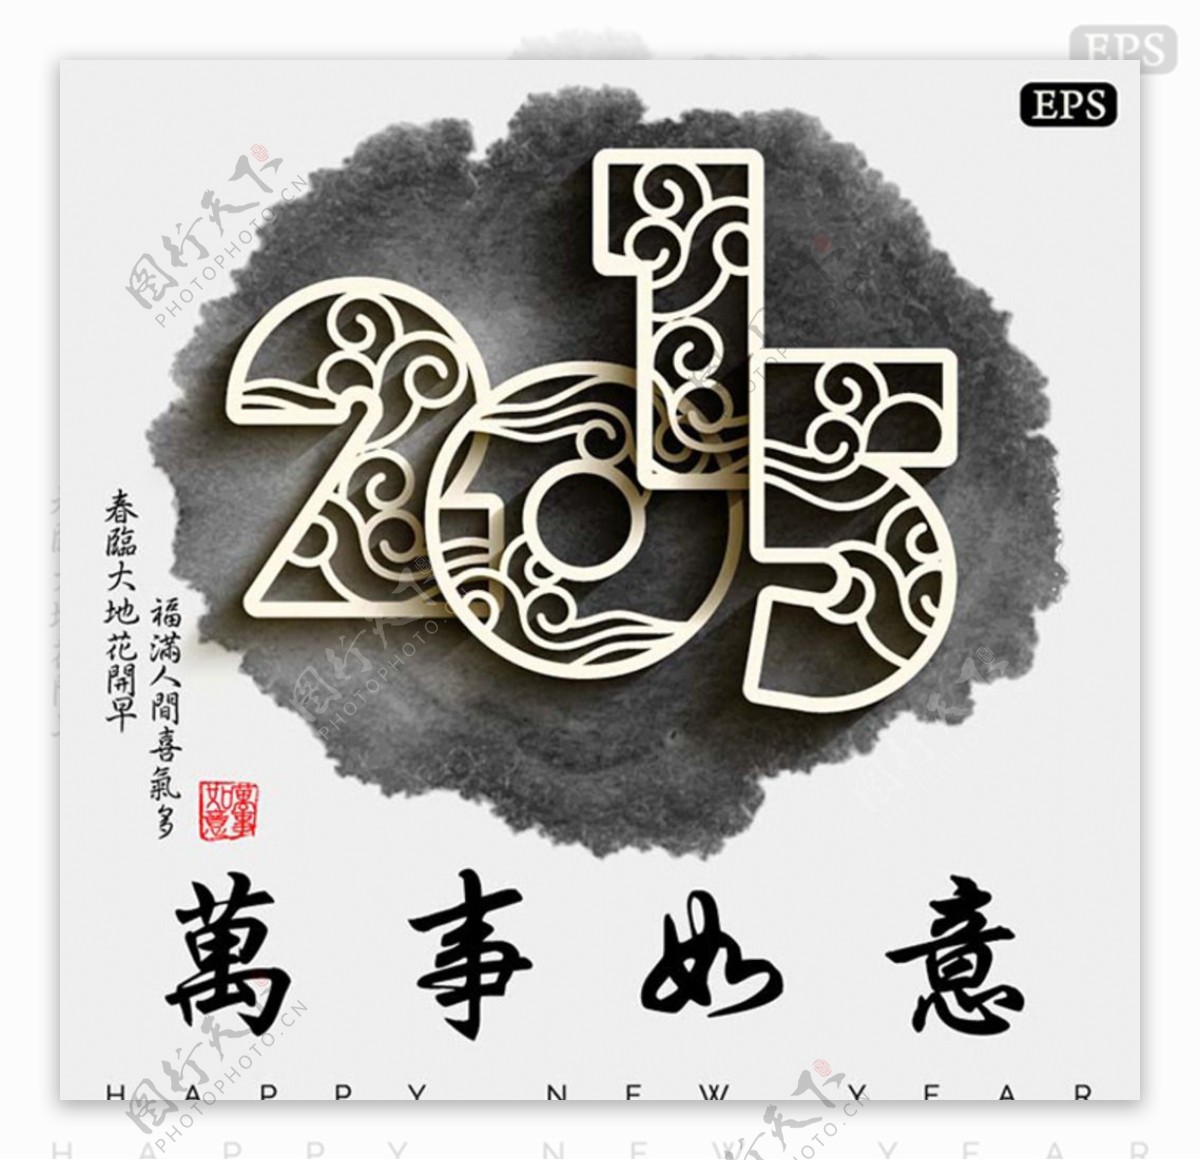 2015剪纸中国风背景